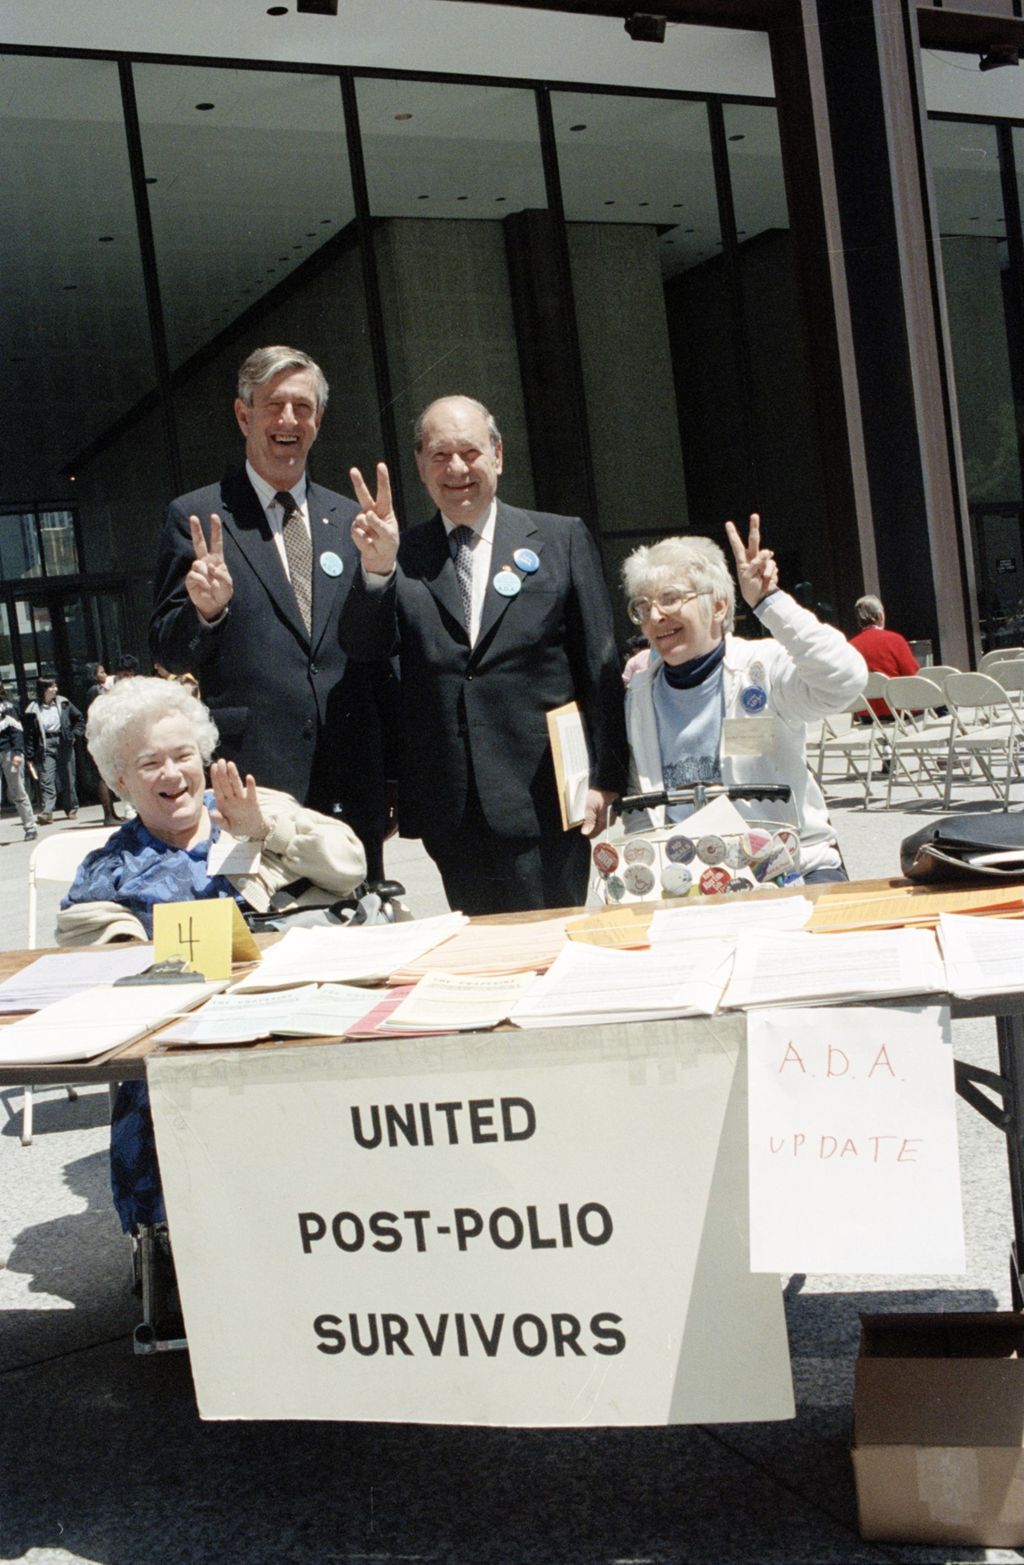 Miniature of Congressman Frank Annunzio and United Post-Polio Survivors